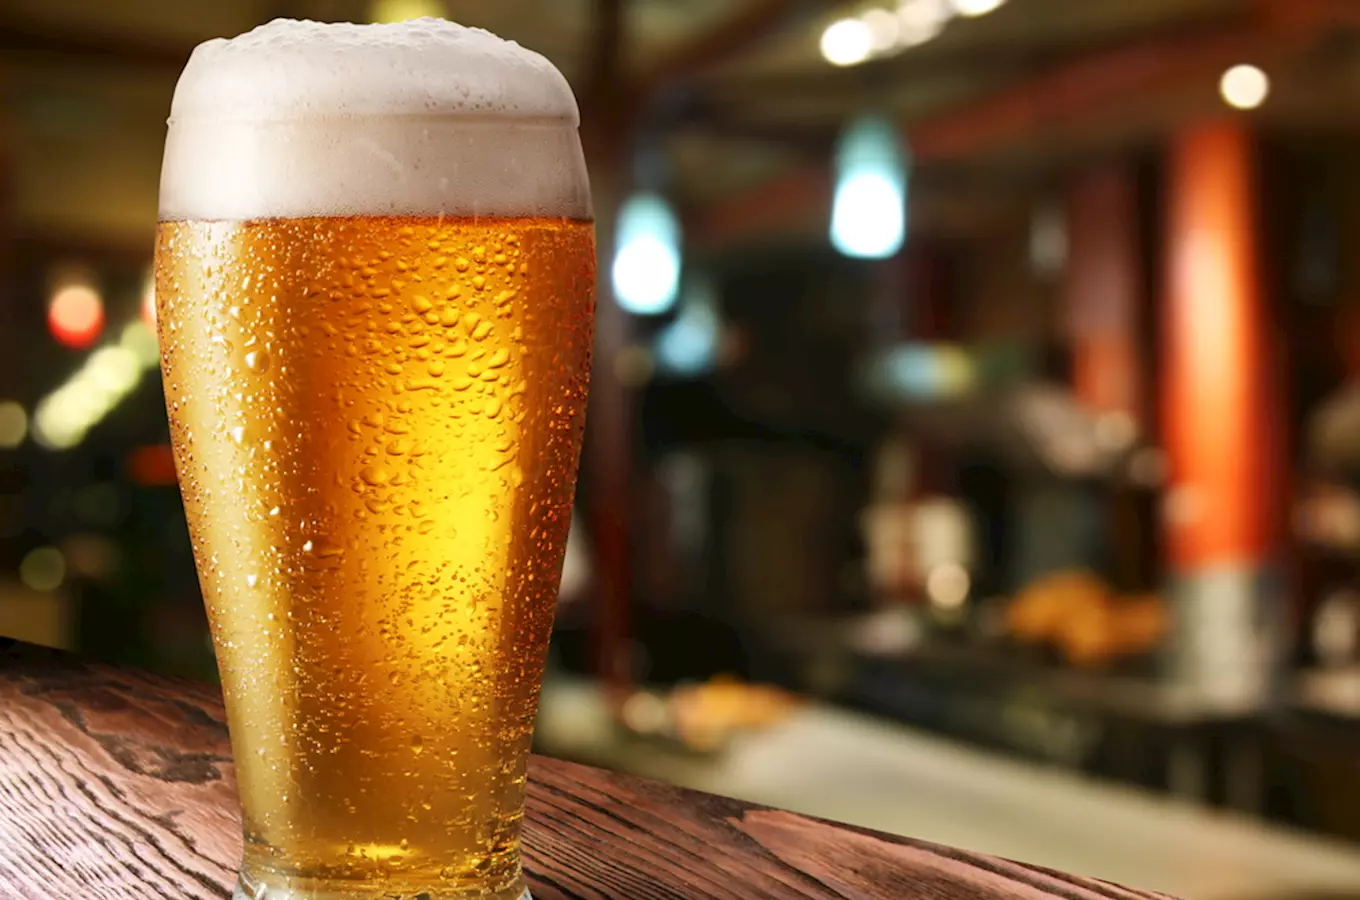 Exkurze v pivovaru Znojmo – unikátní pivo z vinných kvasinek